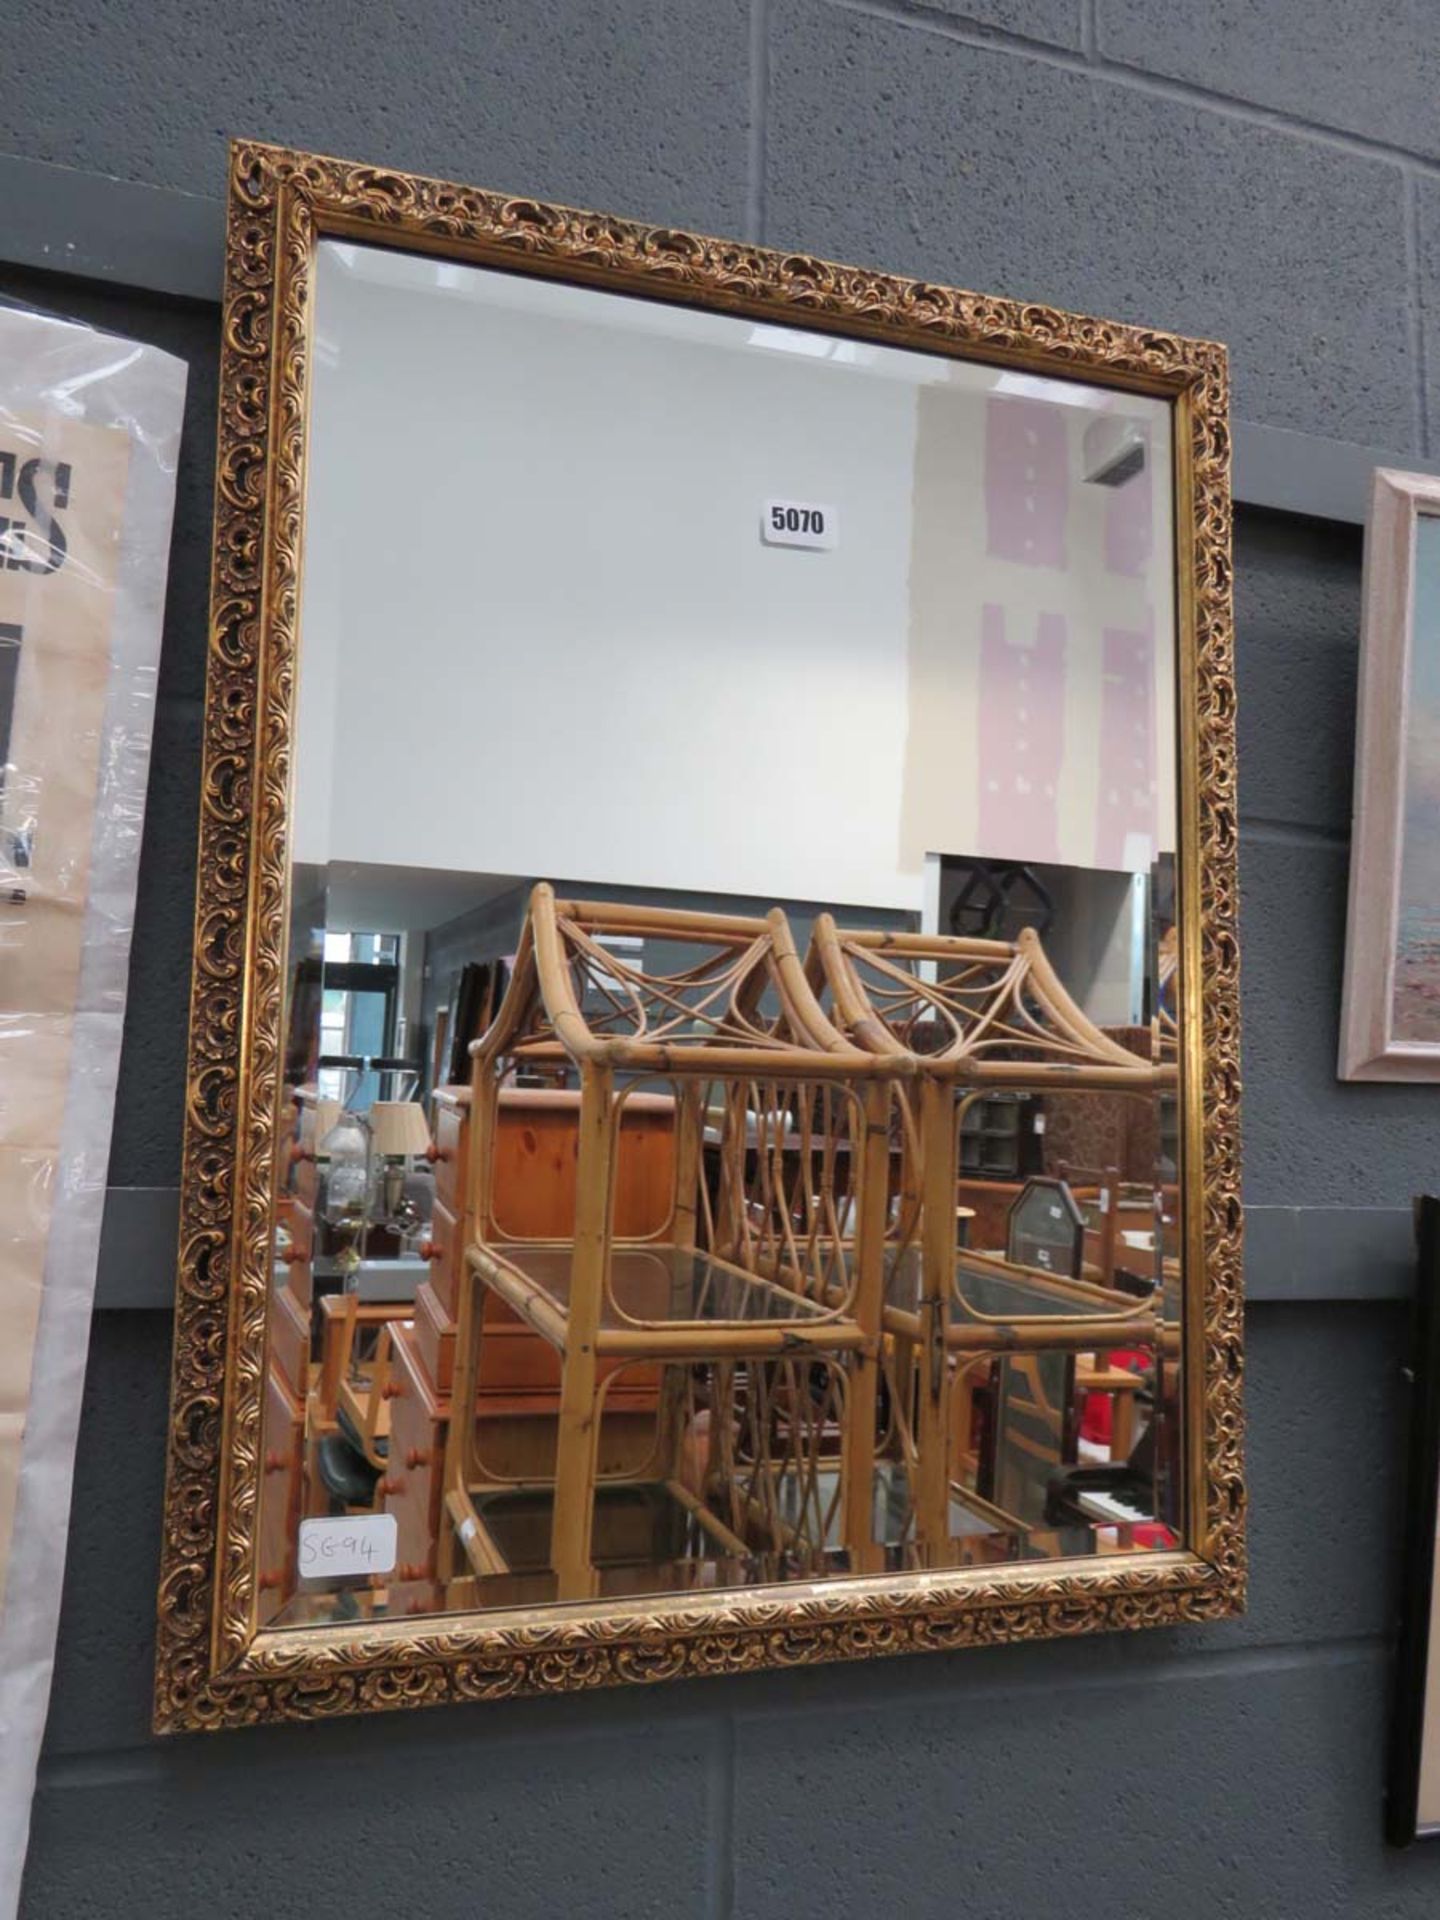 Rectangular bevelled mirror in gilt frame